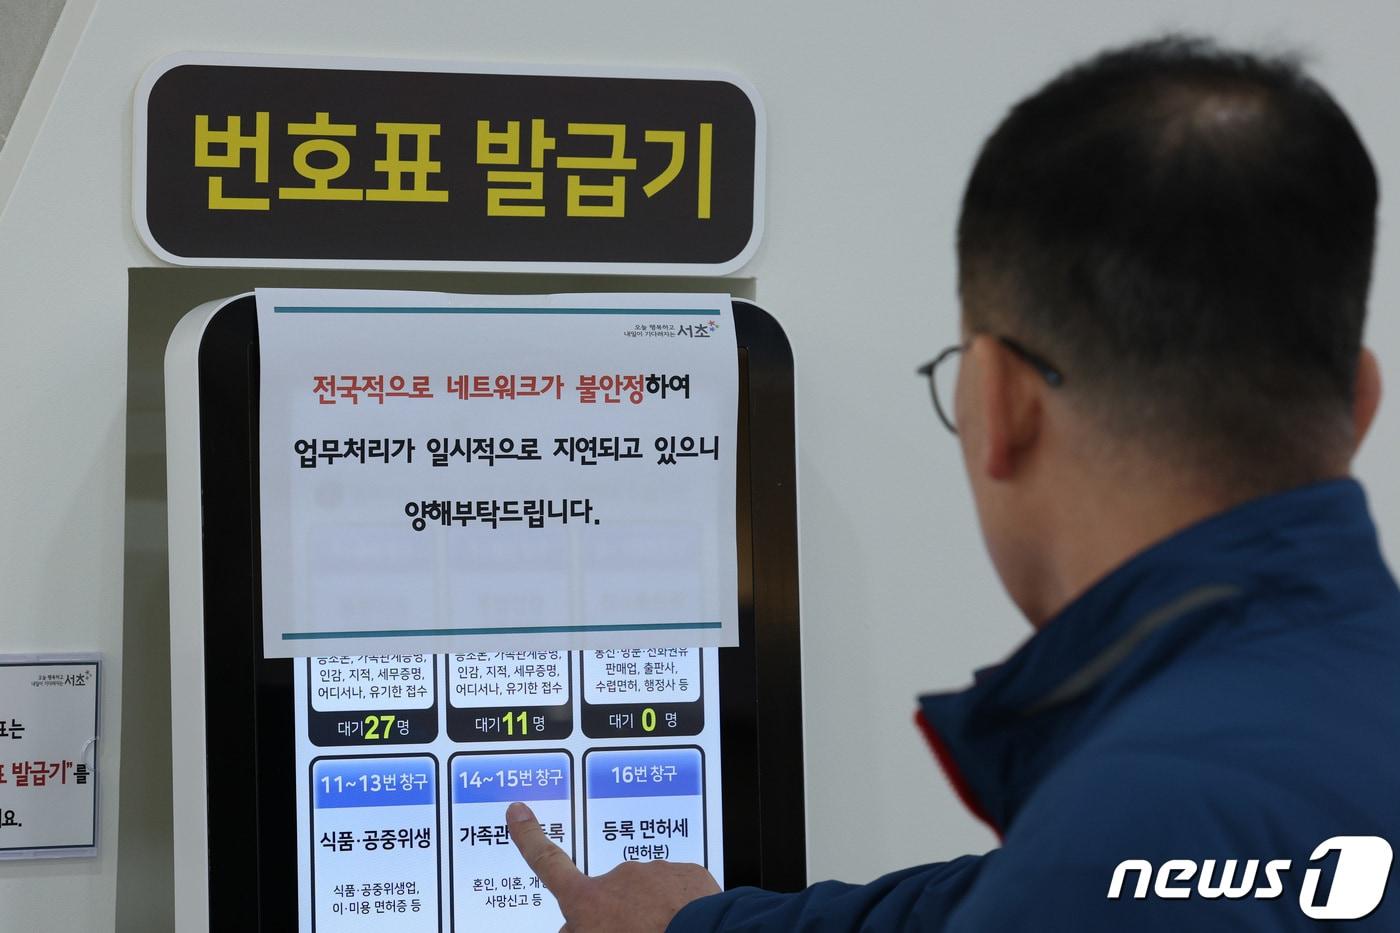 지난 17일 오전 서울의 한 구청에 전국 지방자치단체 행정전산망이 시스템 오류를 알리는 안내문이 붙어 있다. ⓒ News1 신웅수 기자